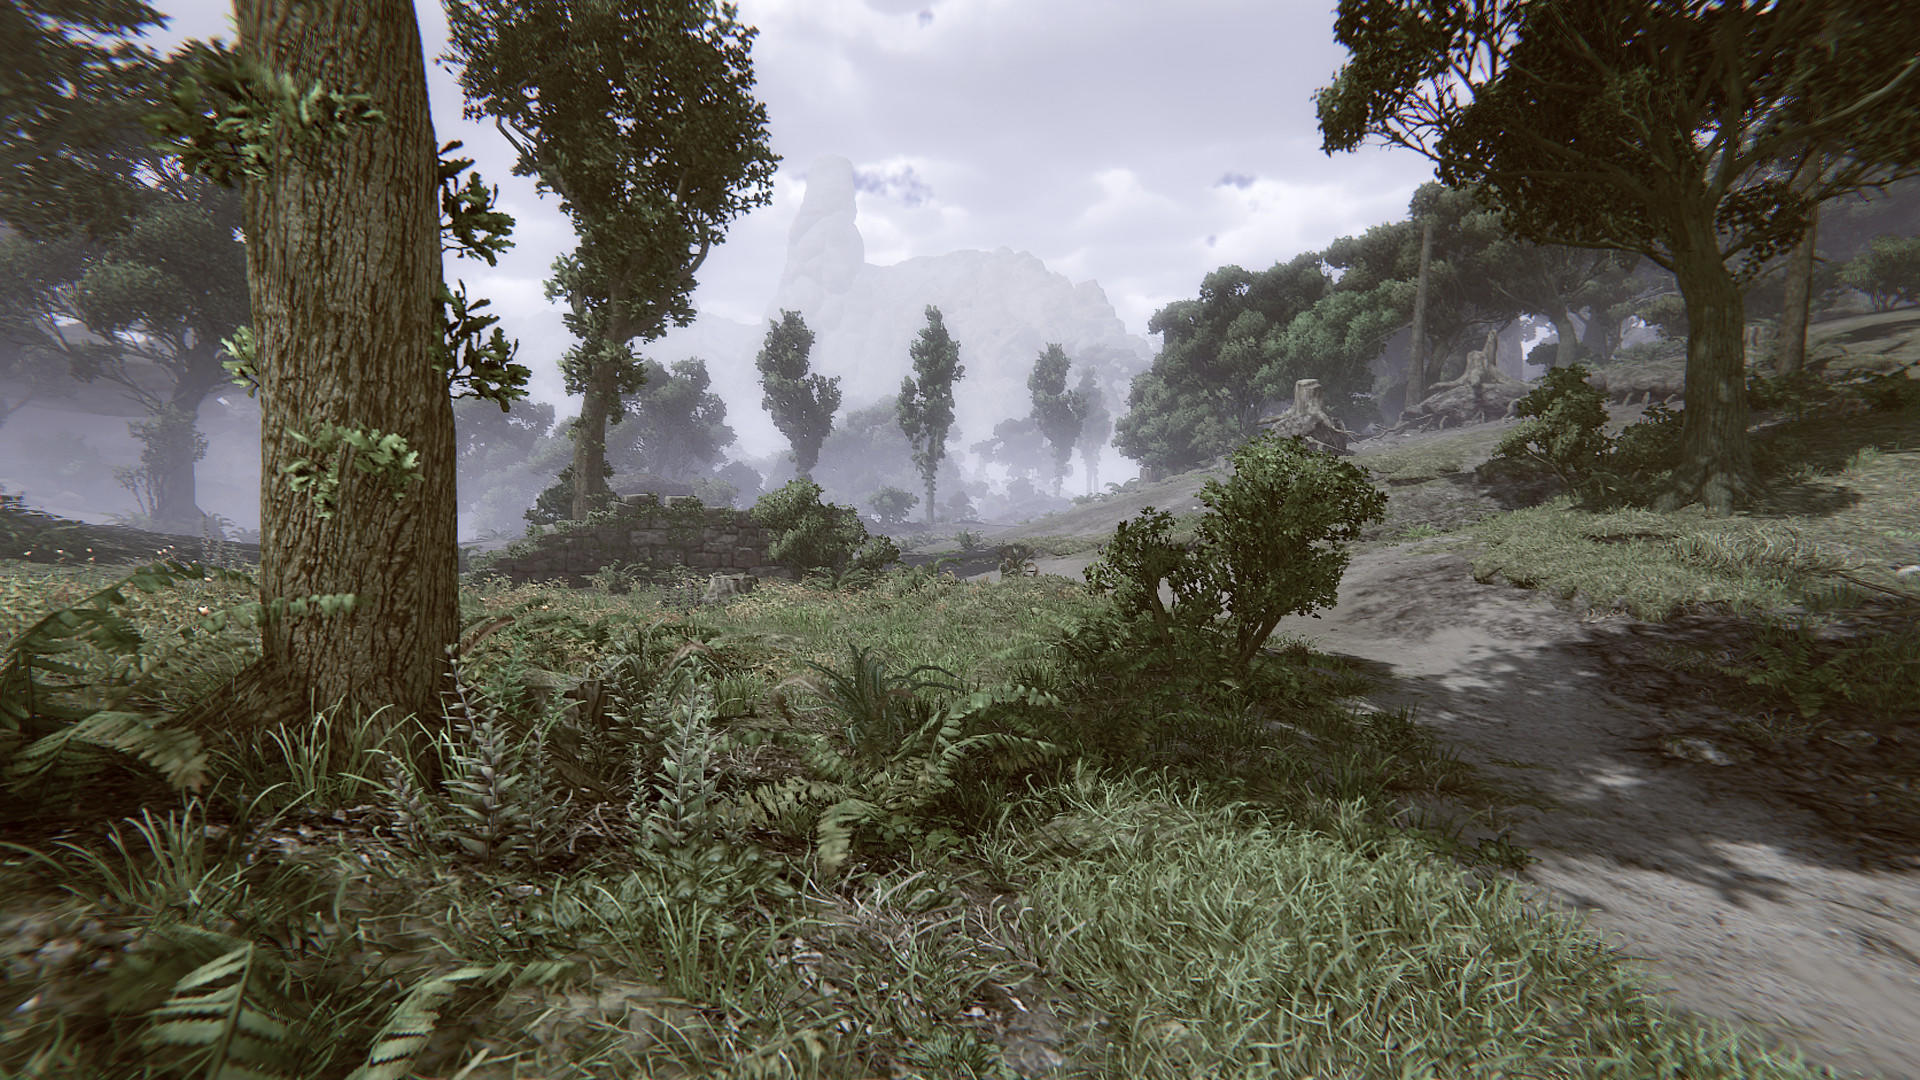 Remote Knights Online screenshot game